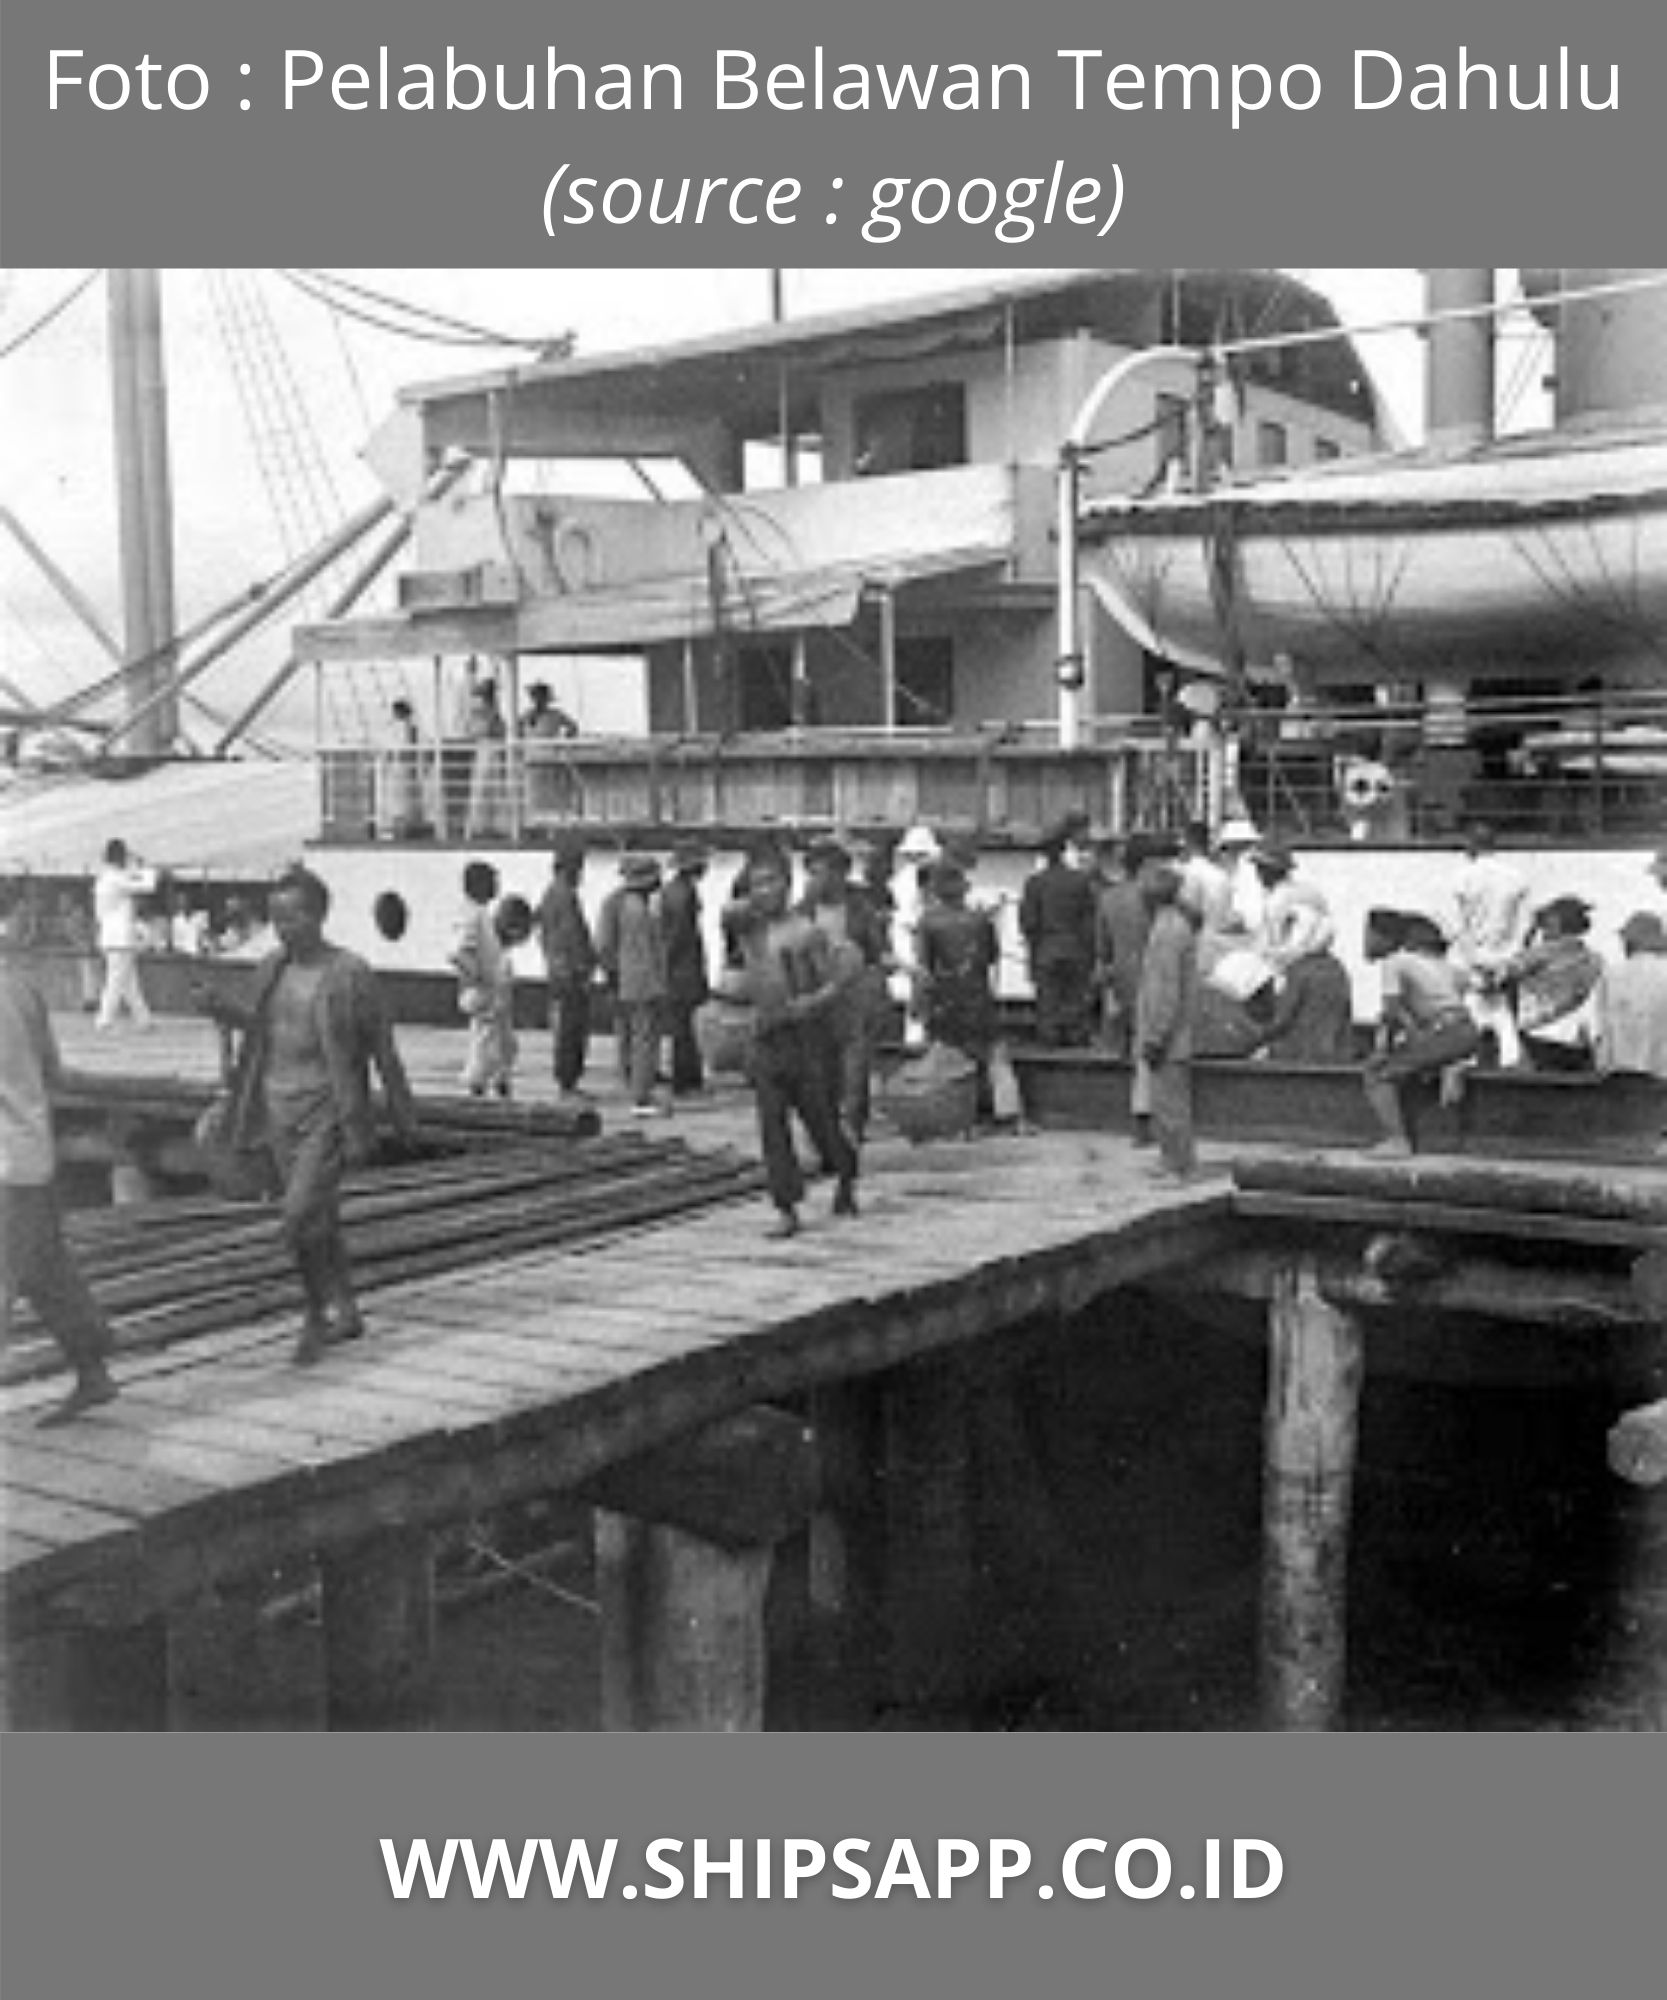 Sejarah Pelabuhan Belawan